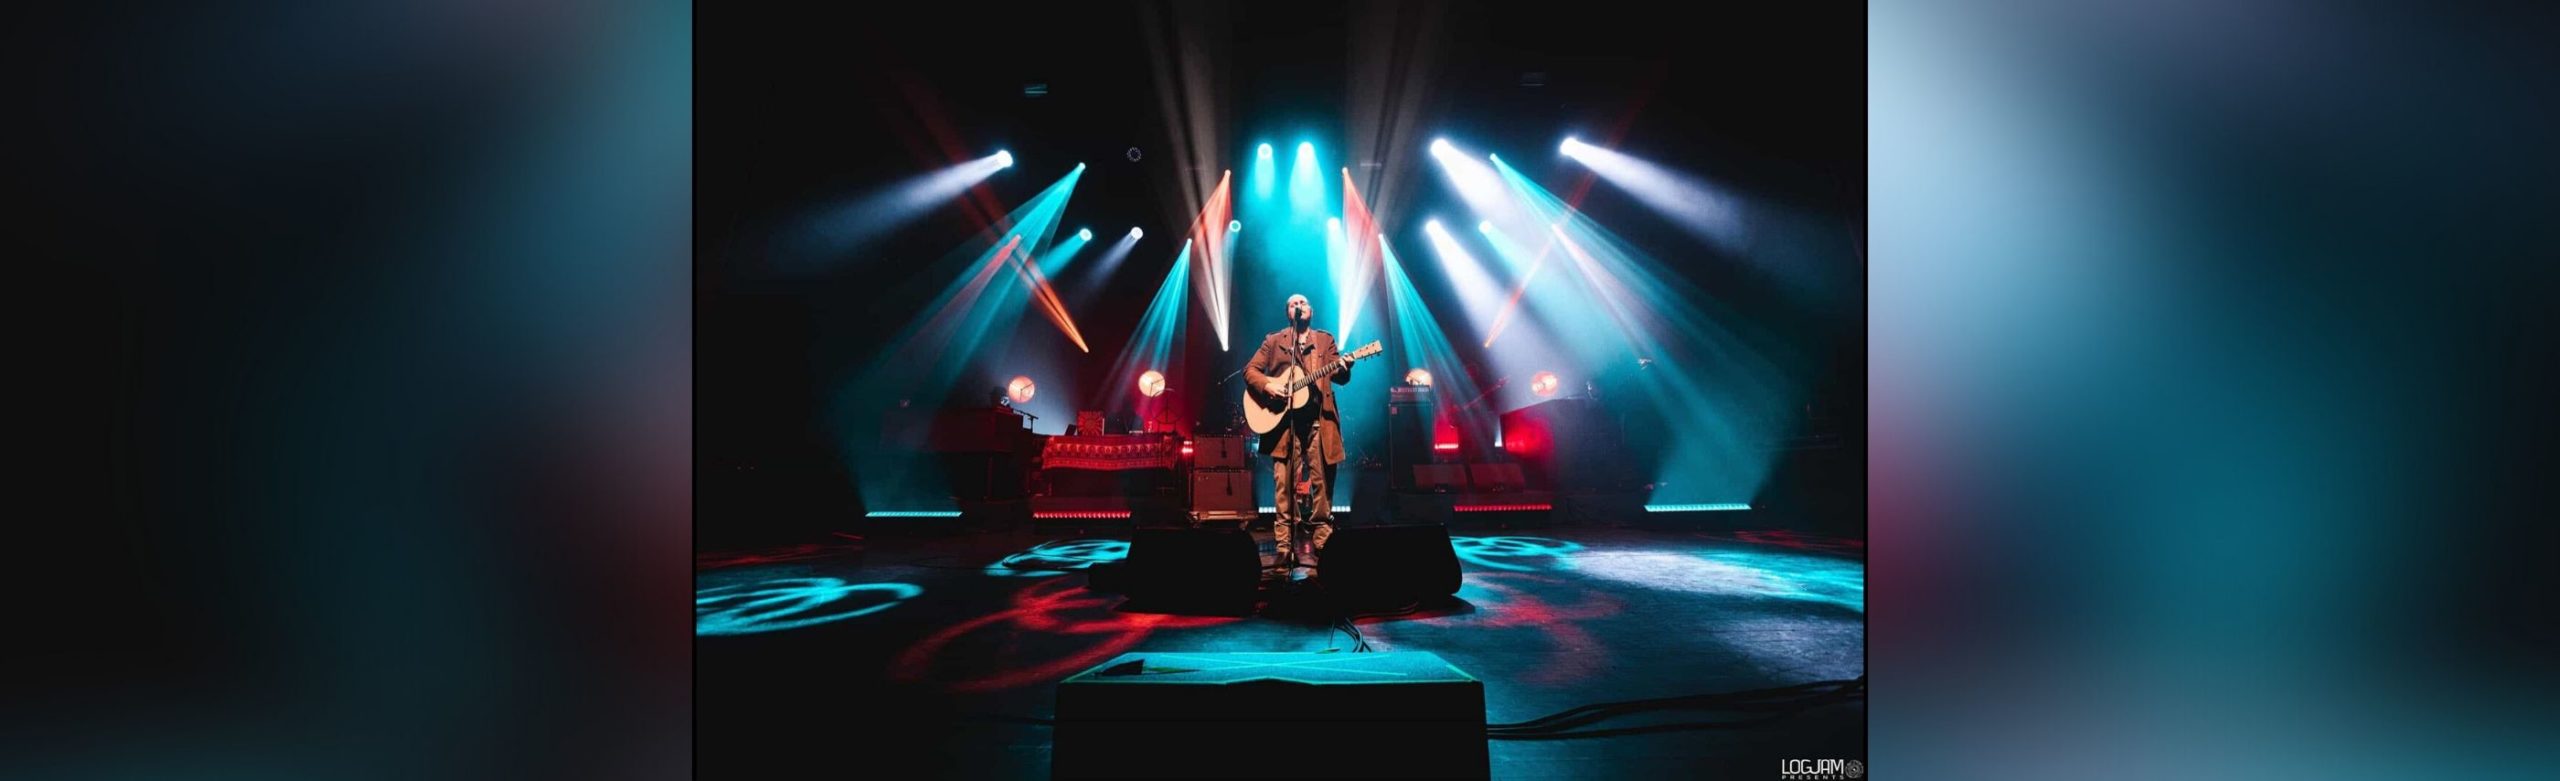 Citzen Cope Plans Return to Missoula for Solo Acoustic Performance Image